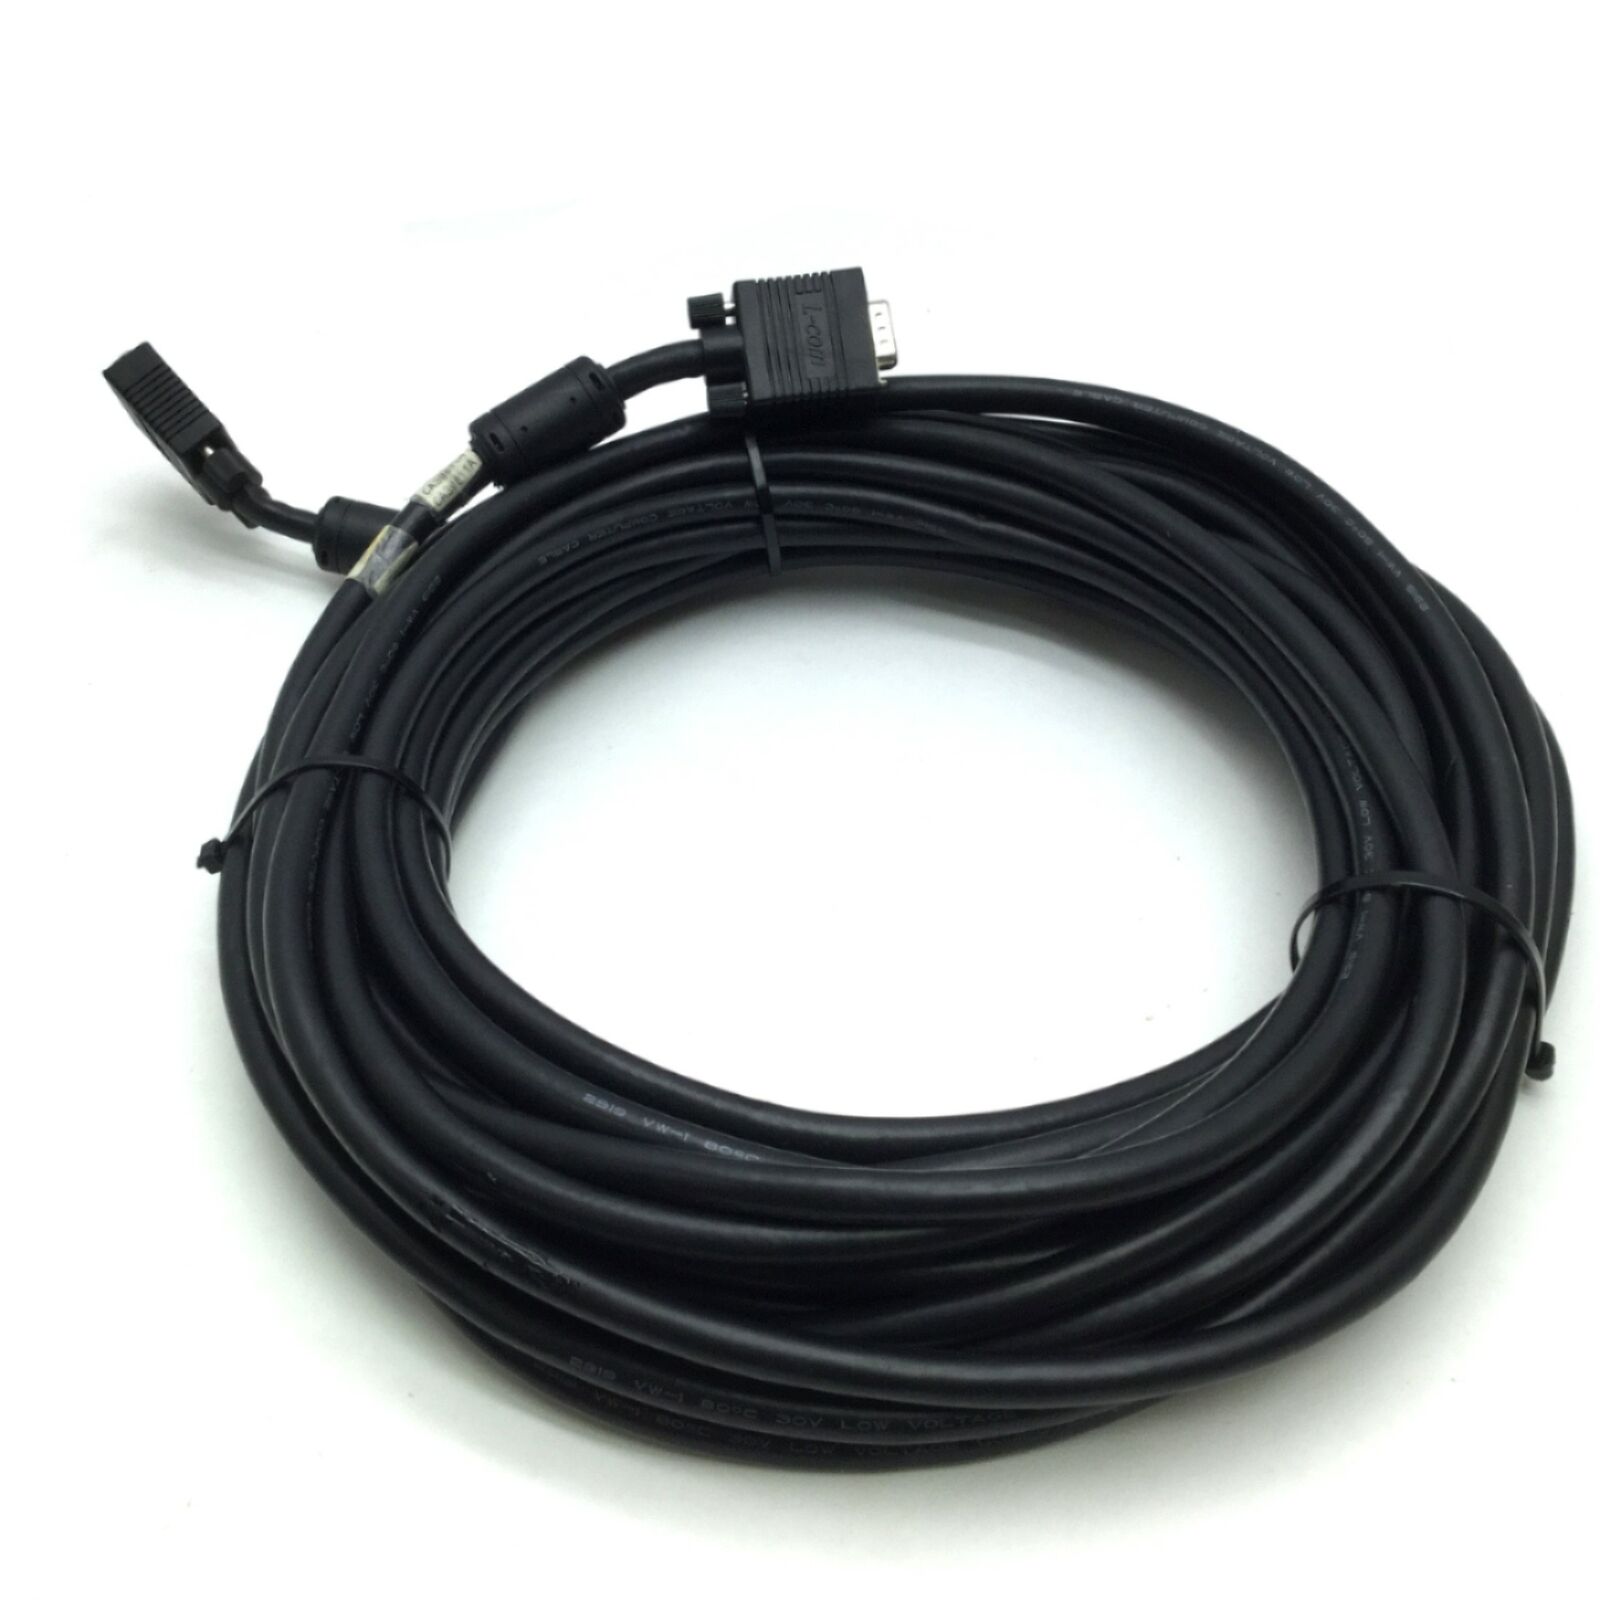 L-Com CTLF3VGAMM-50 VGA Cable HD15 Male to Male, Black Length 50\', Ferrite Cores